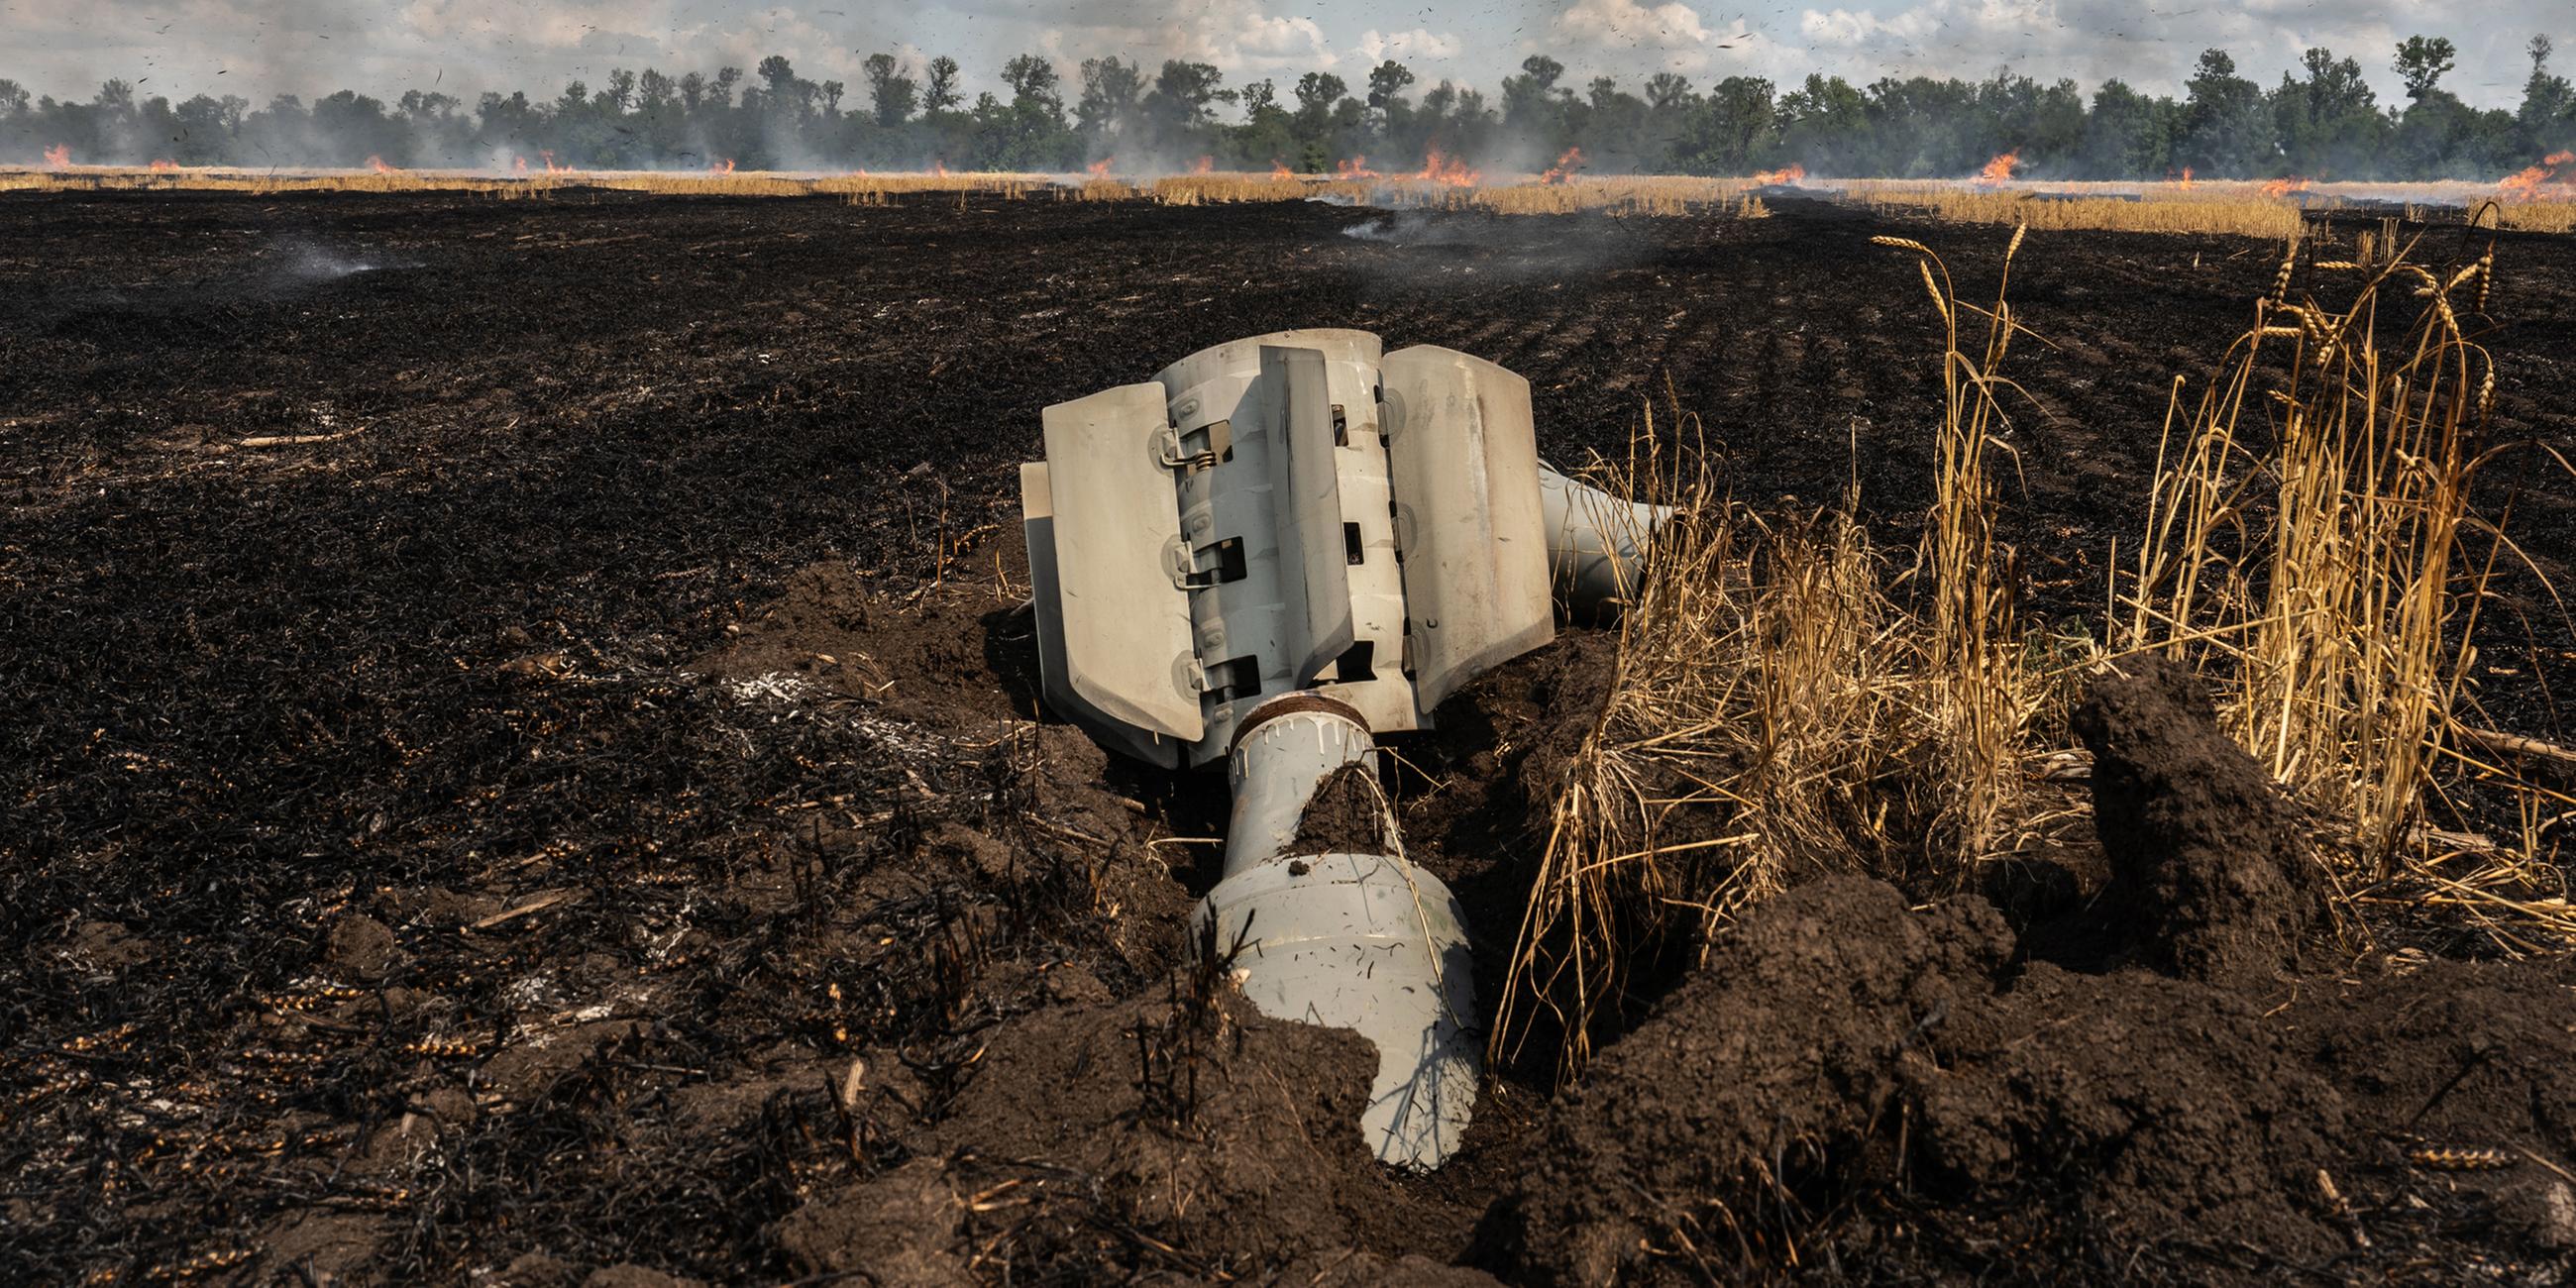 Überbleibsel einer russischen Rakete in einem ukrainischen Weizenfeld. Angriffe wie dieser verstärken die Nahrungsmittelkrise in und außerhalb der Ukraine.